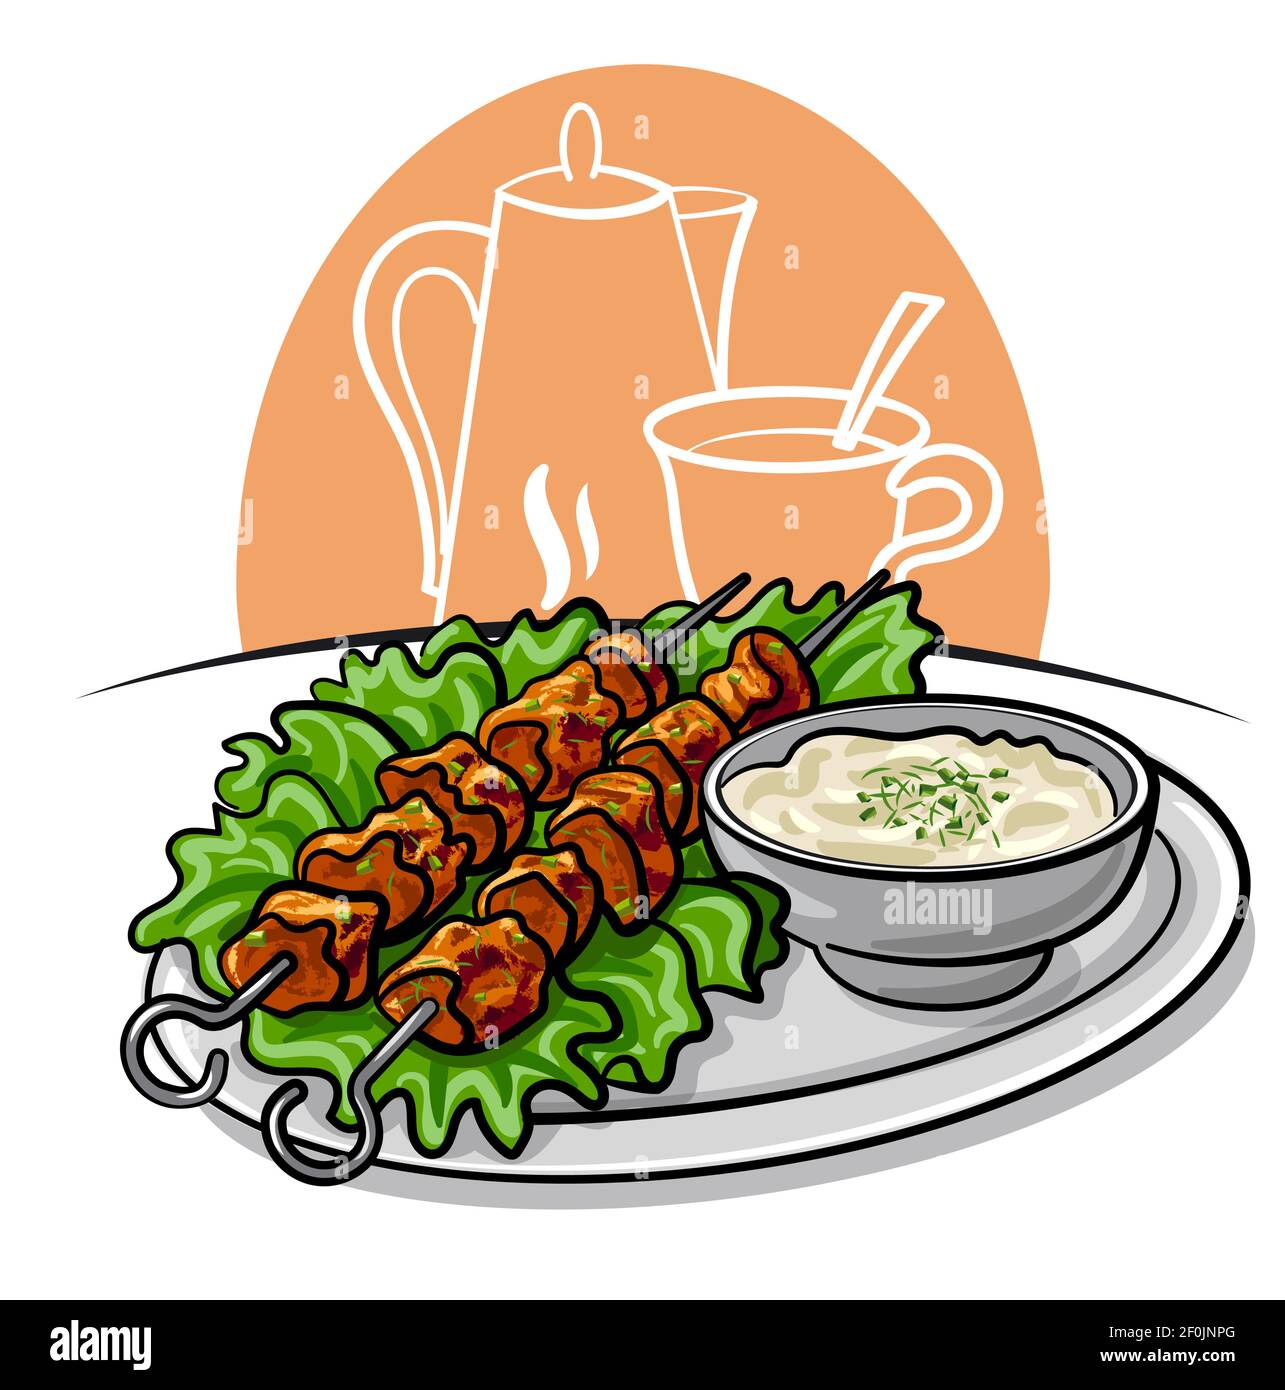 ilustración del kebab de tawook con salsa y lechuga y lechuga en el plato Ilustración del Vector